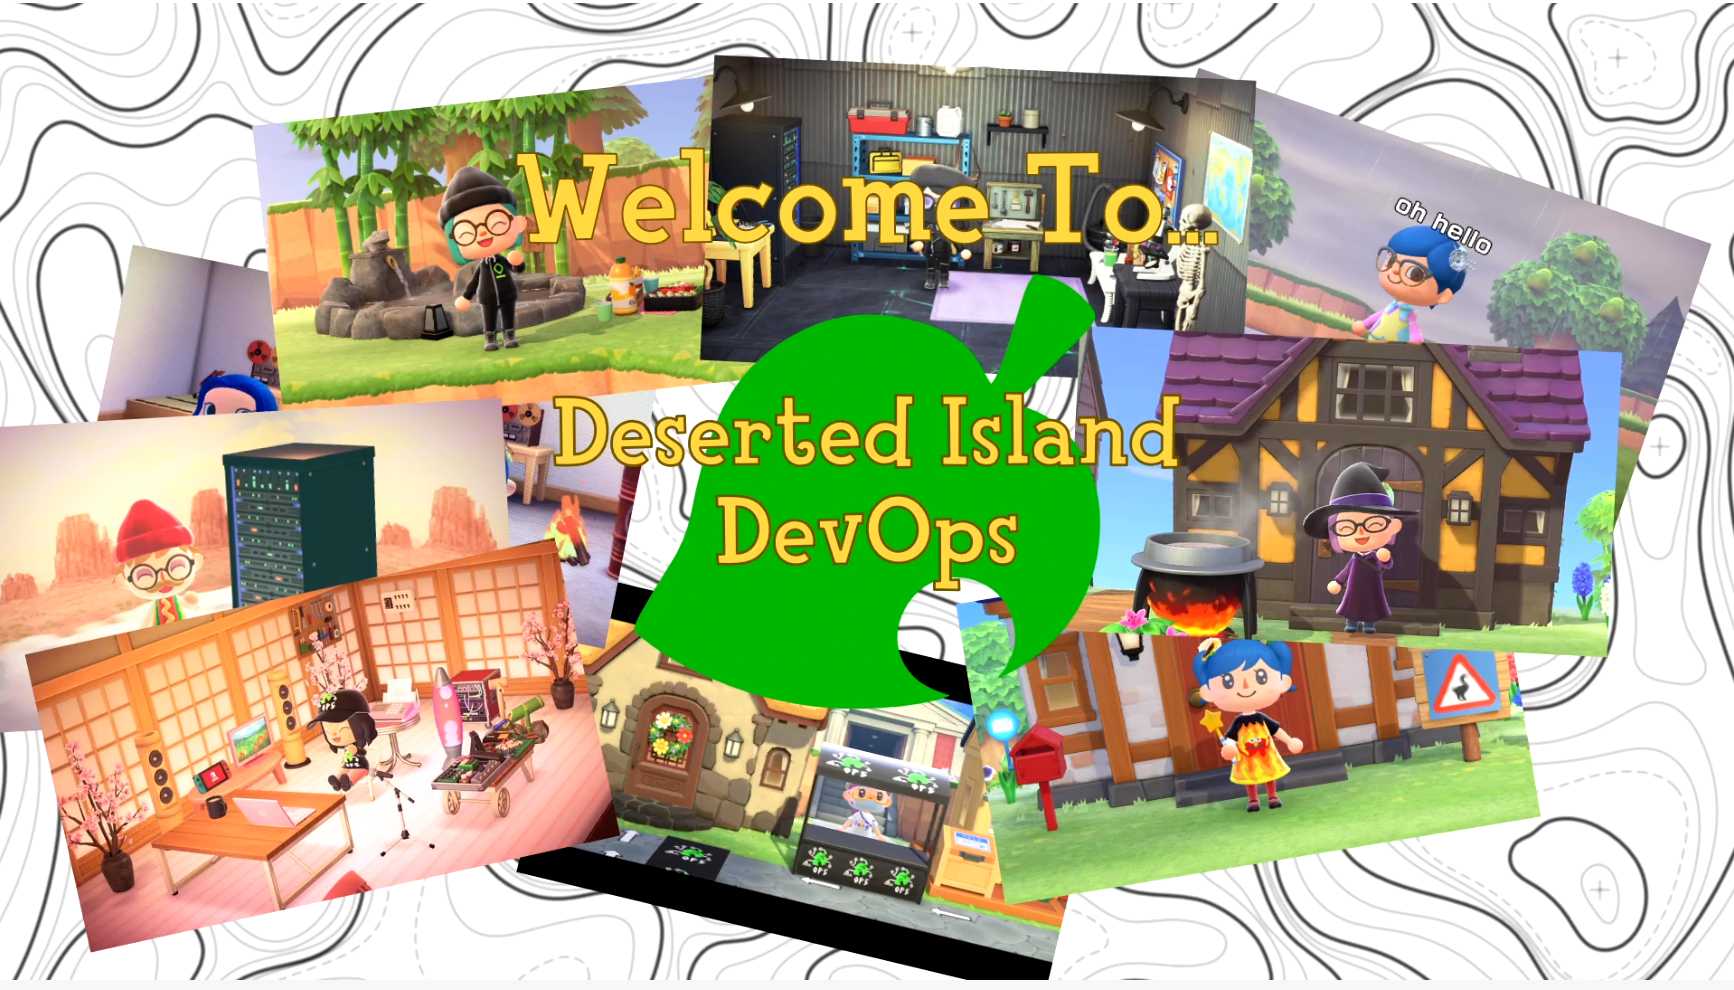 Screenshot: Welcome to Deserted Island DevOps